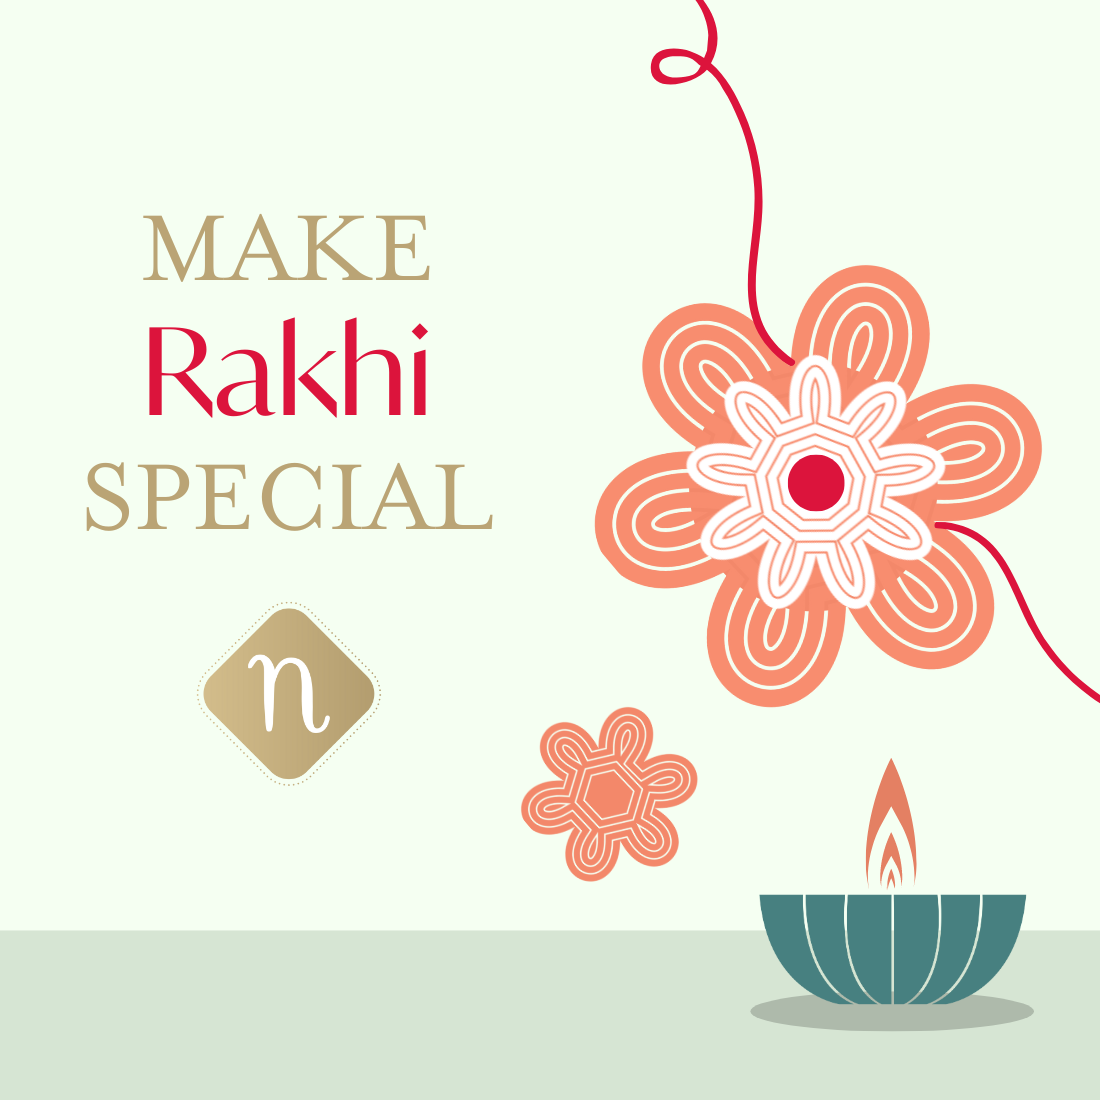 Exclusive Raksha Bandhan Gift - First Rakhi Gifts for Girl, Boy